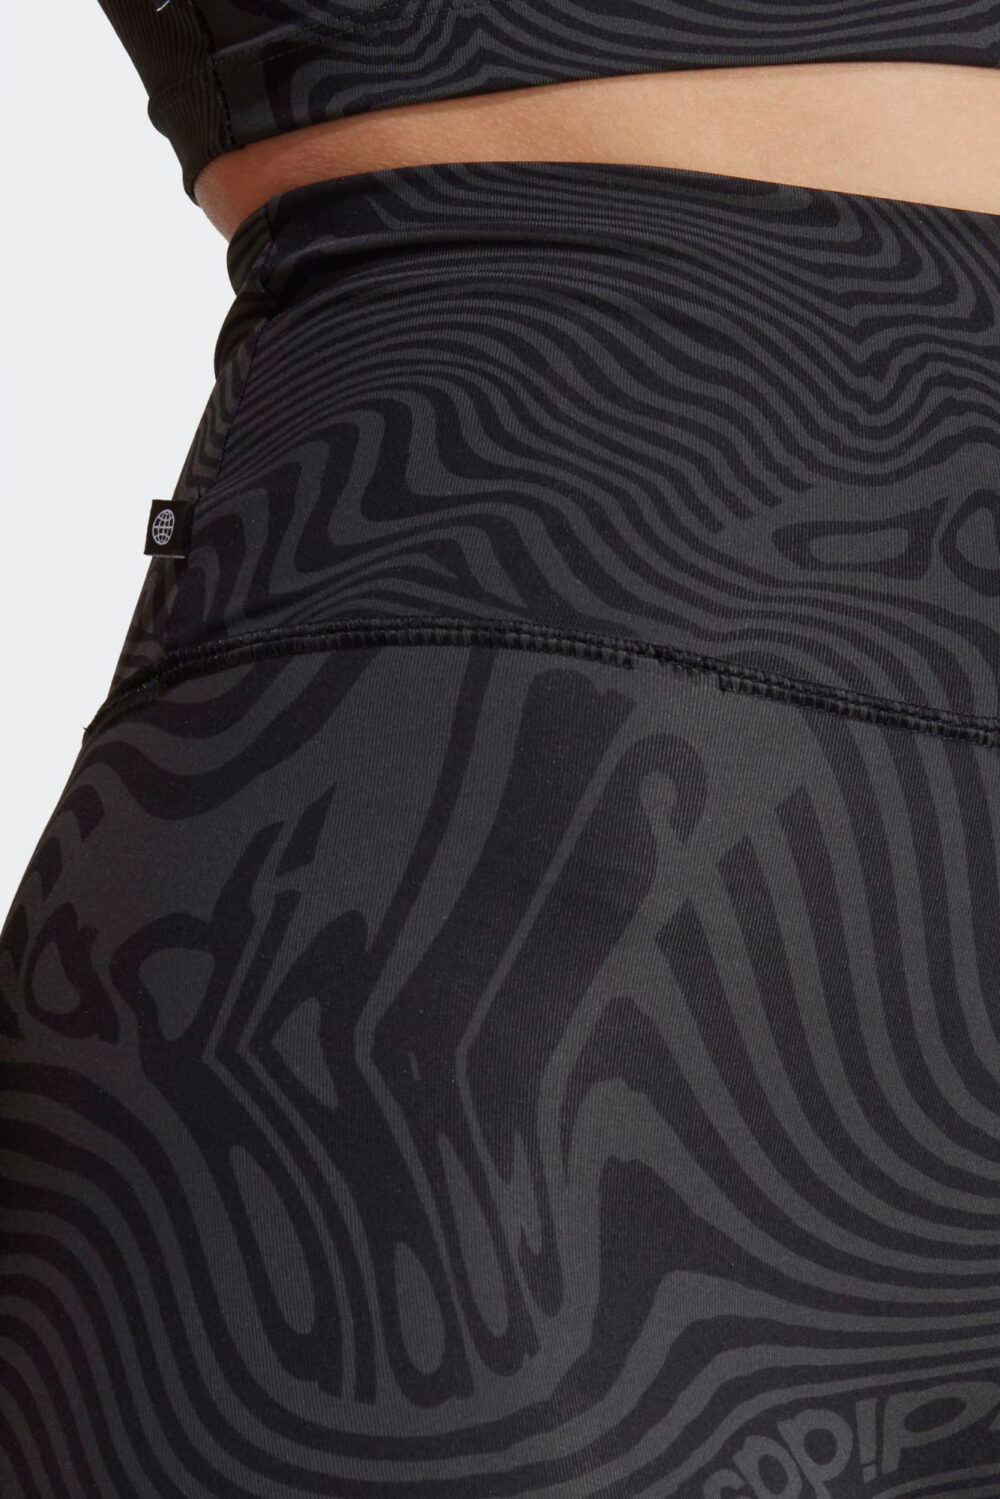 Bermuda Adidas aop short tight carbon/black Antracite - Foto 4